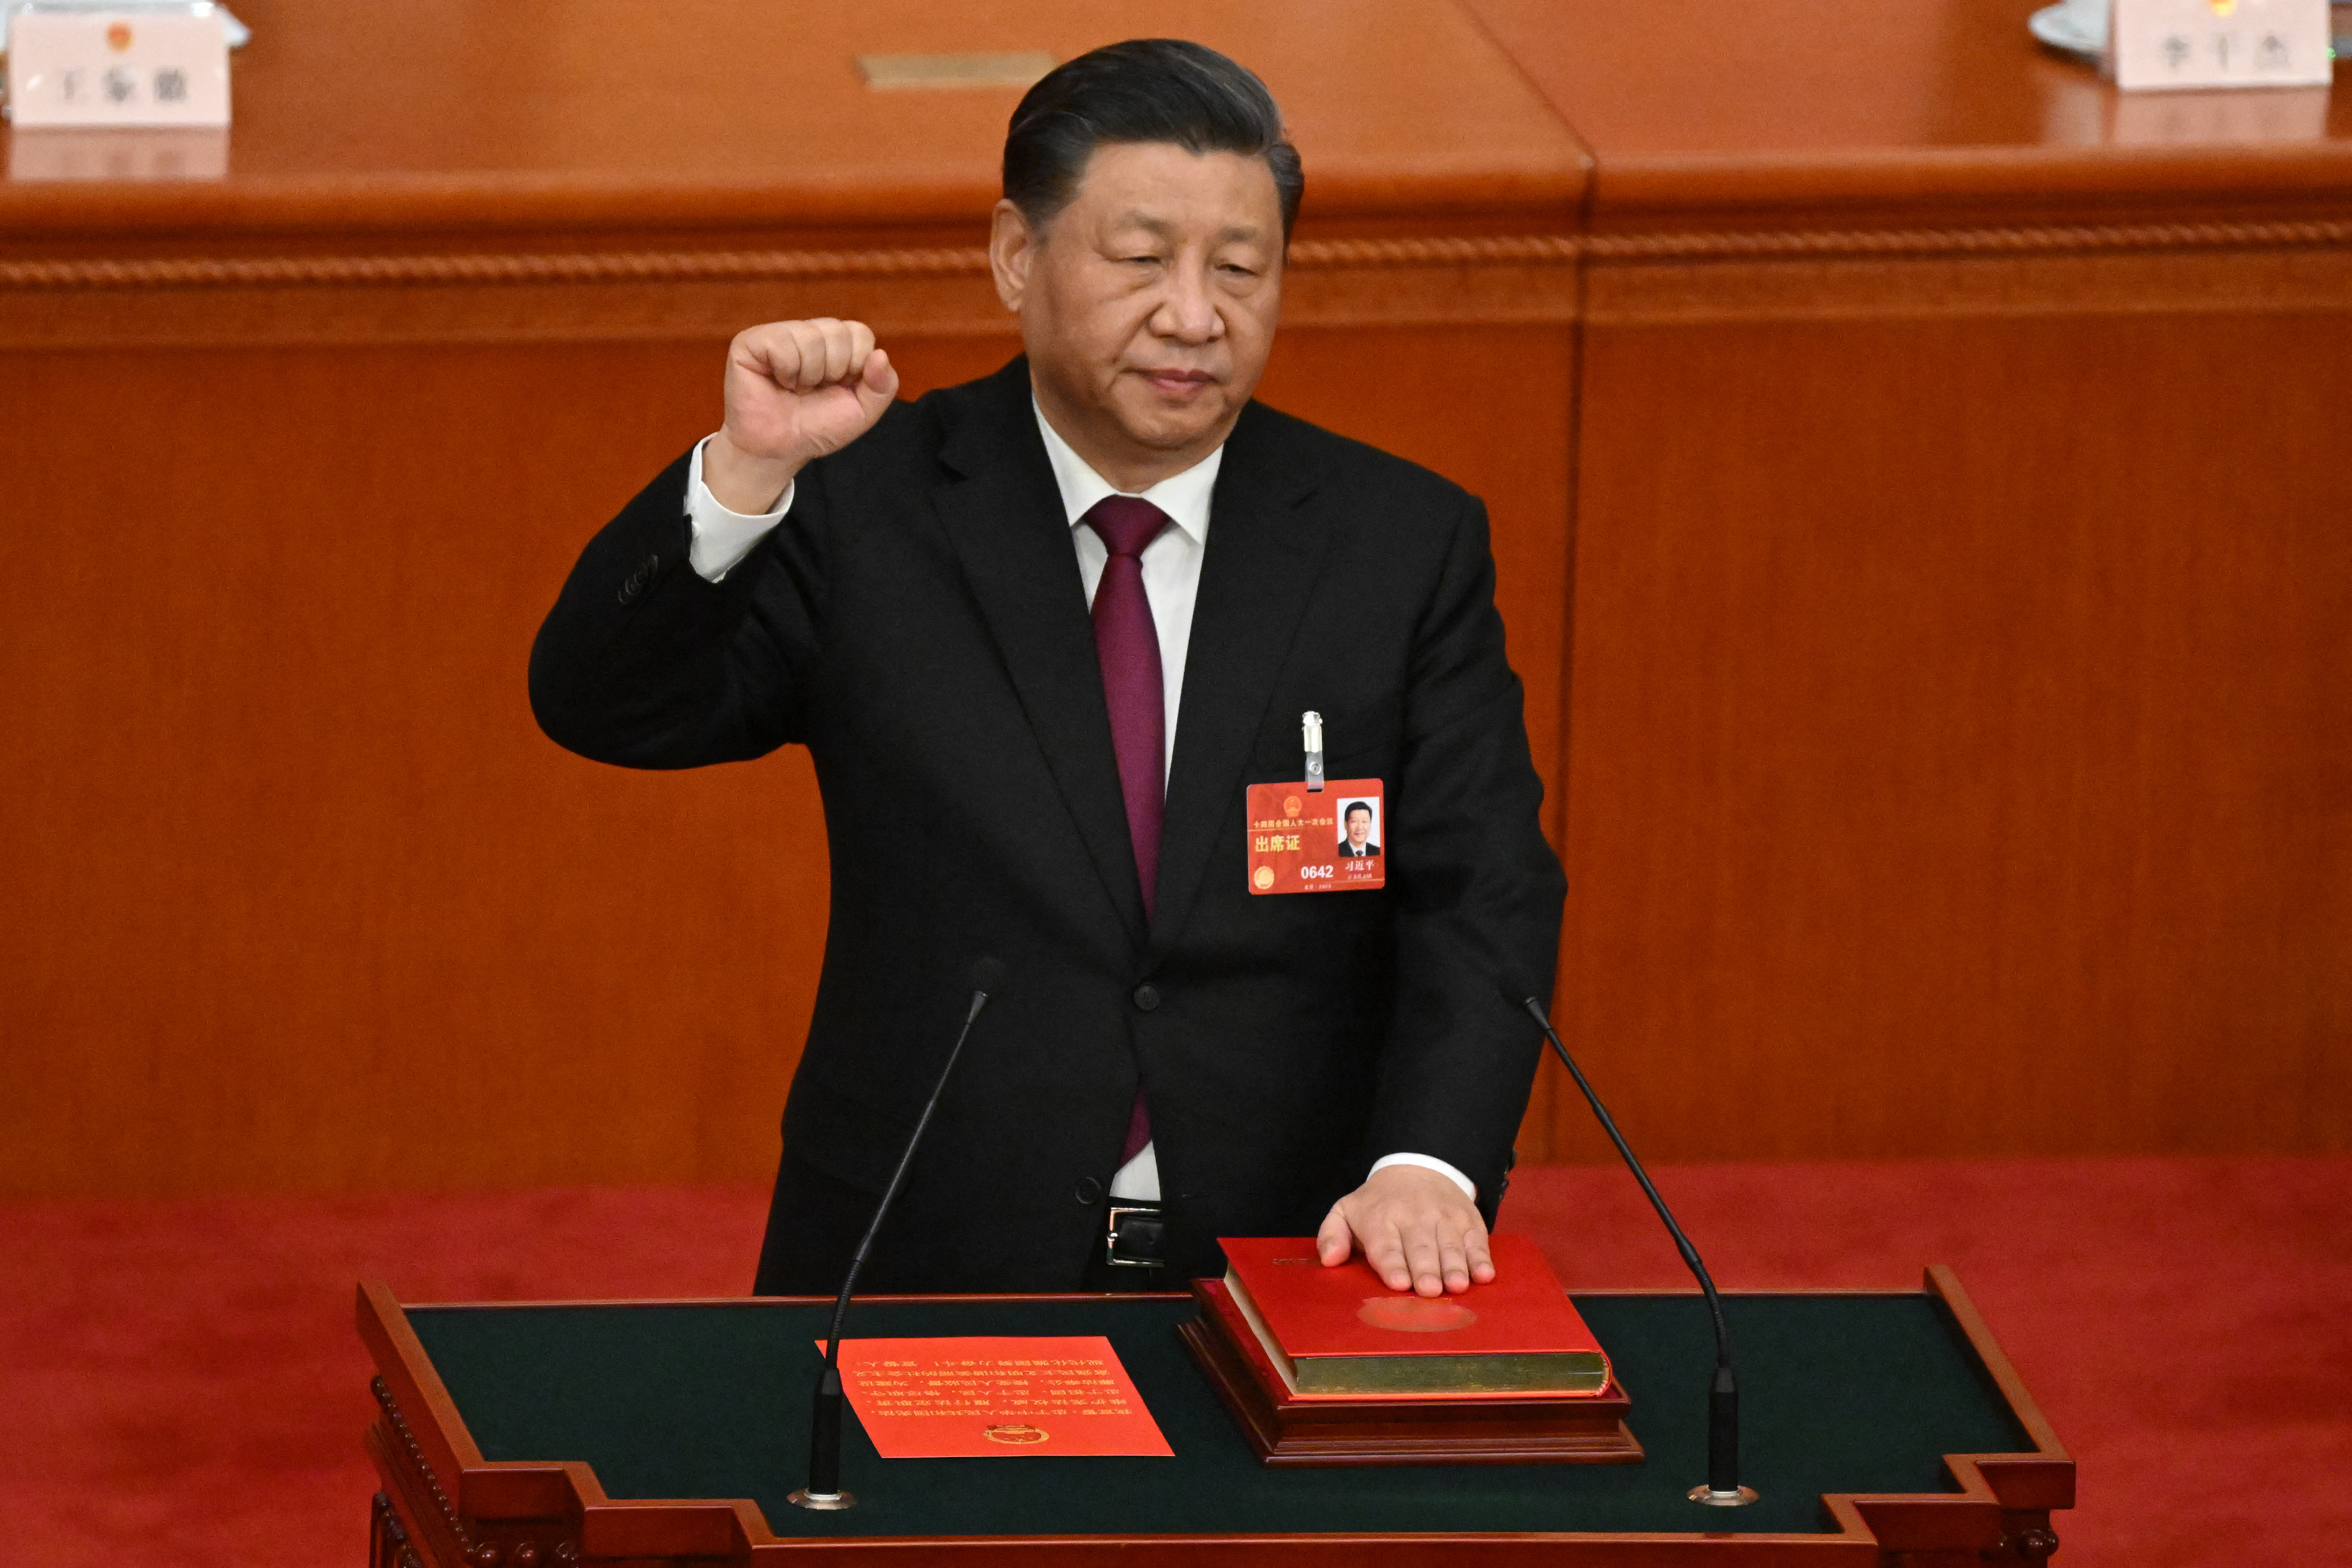 Quién es realmente Xi Jinping, el dirigente chino más poderoso desde Mao Tse Tung